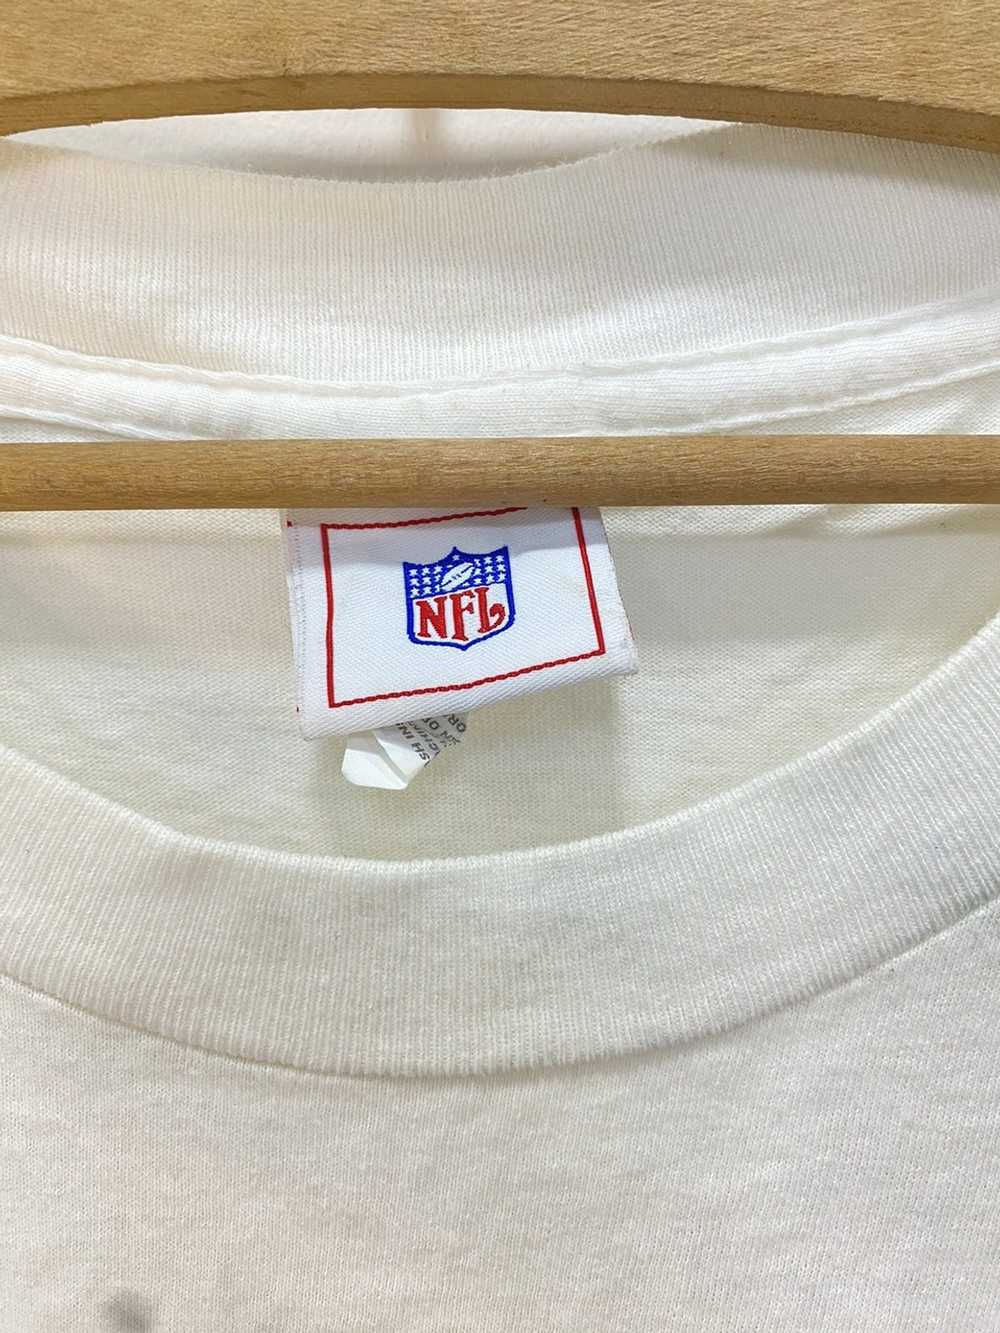 NFL × Vintage Vintage Super Bowl NFL shirt 2003 - image 4